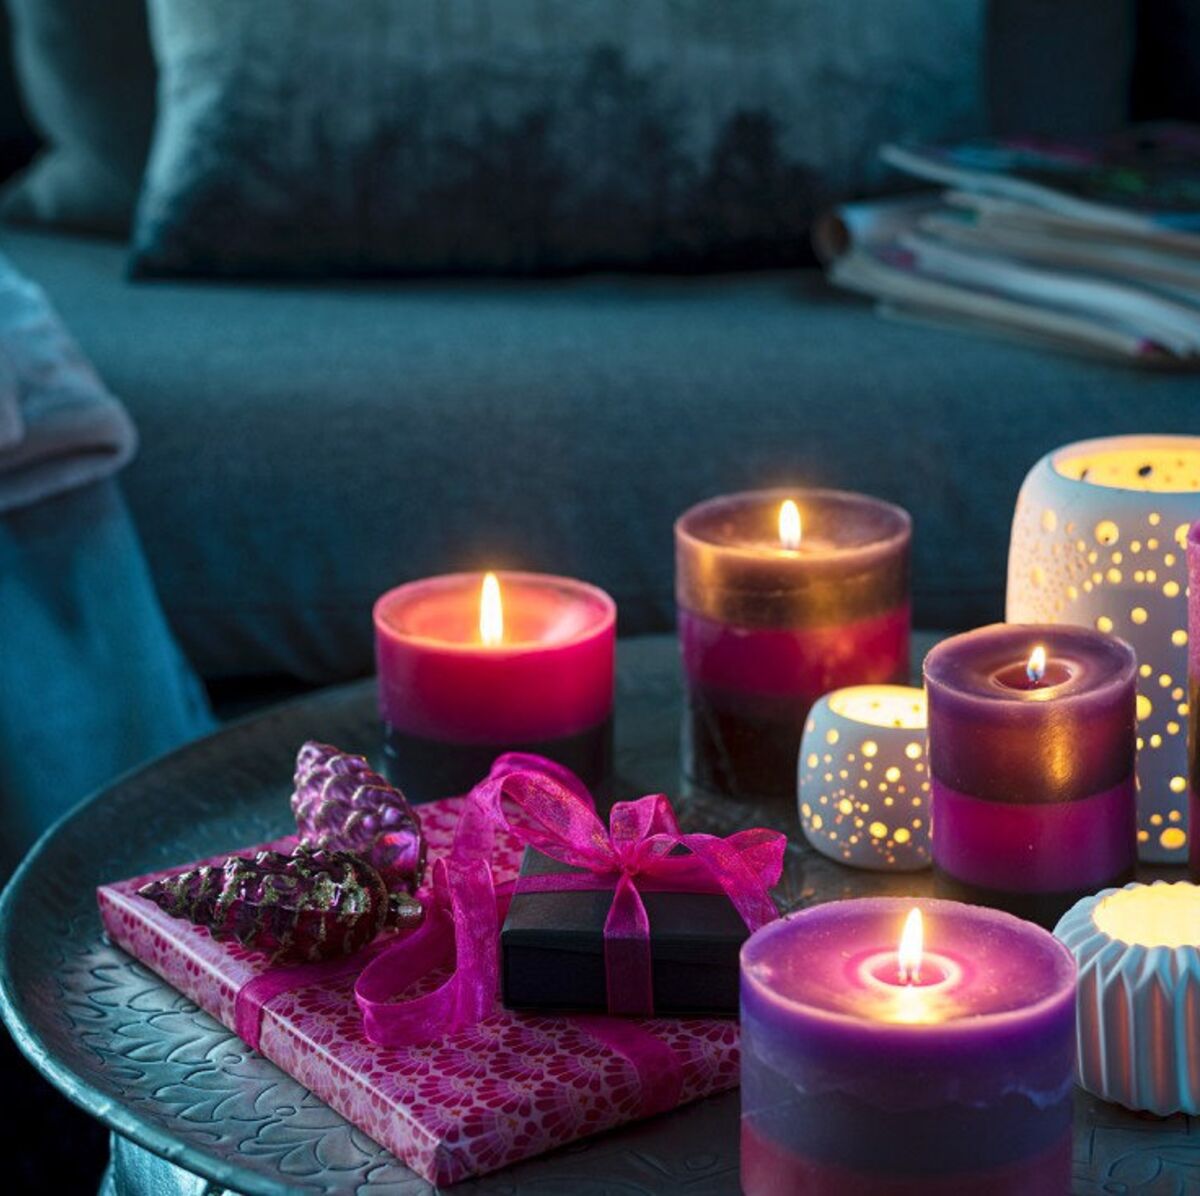 6 idées de centre de table à faire avec des bougies pour Noël : Femme  Actuelle Le MAG